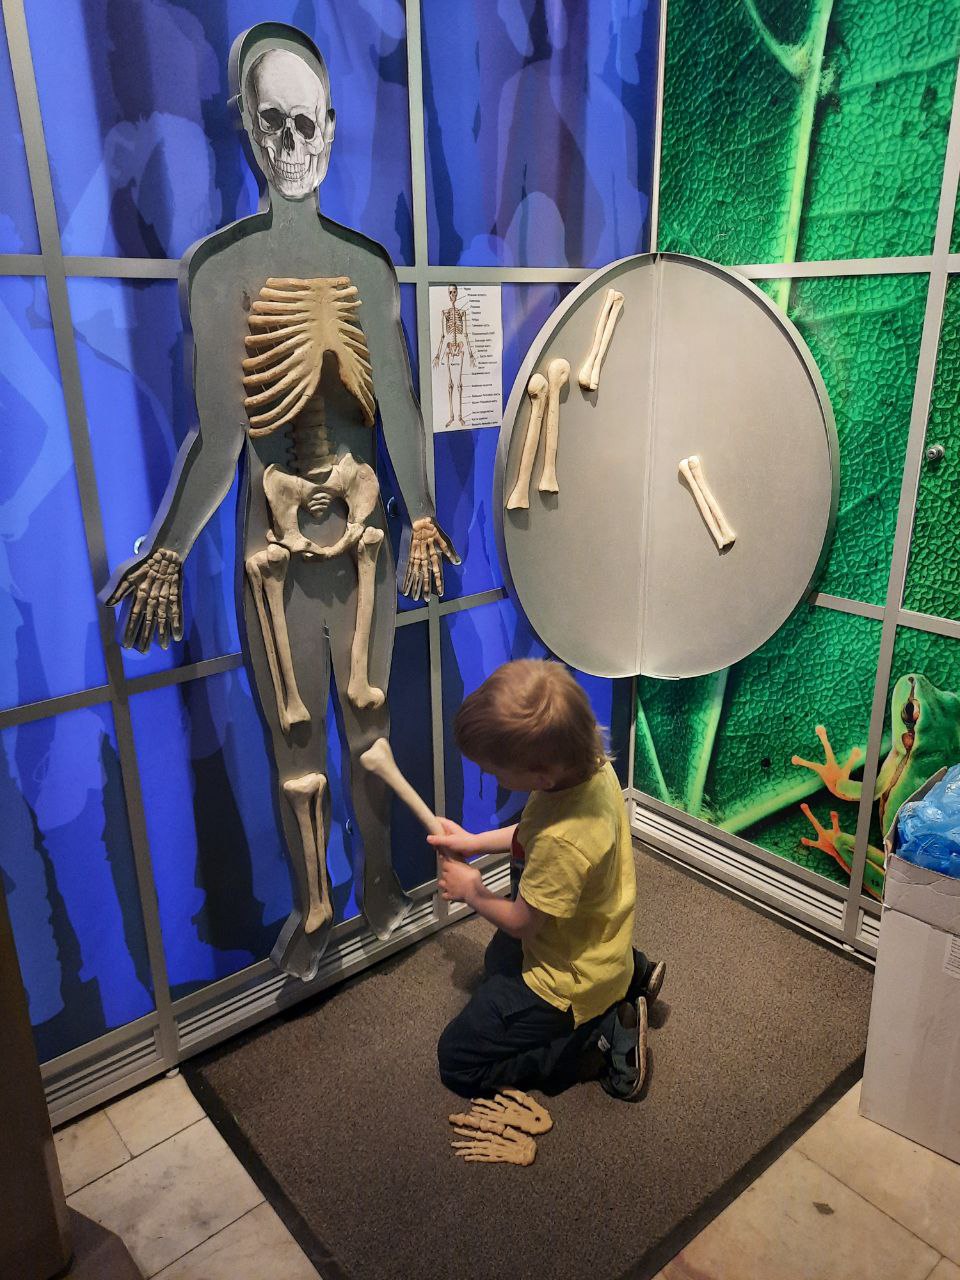 Музей познай себя познай мир. Познай себя Познай мир Дарвиновский музей. Мальчик в музее. Образ экспоната из музея. Собрали скелет в музее неправильно.